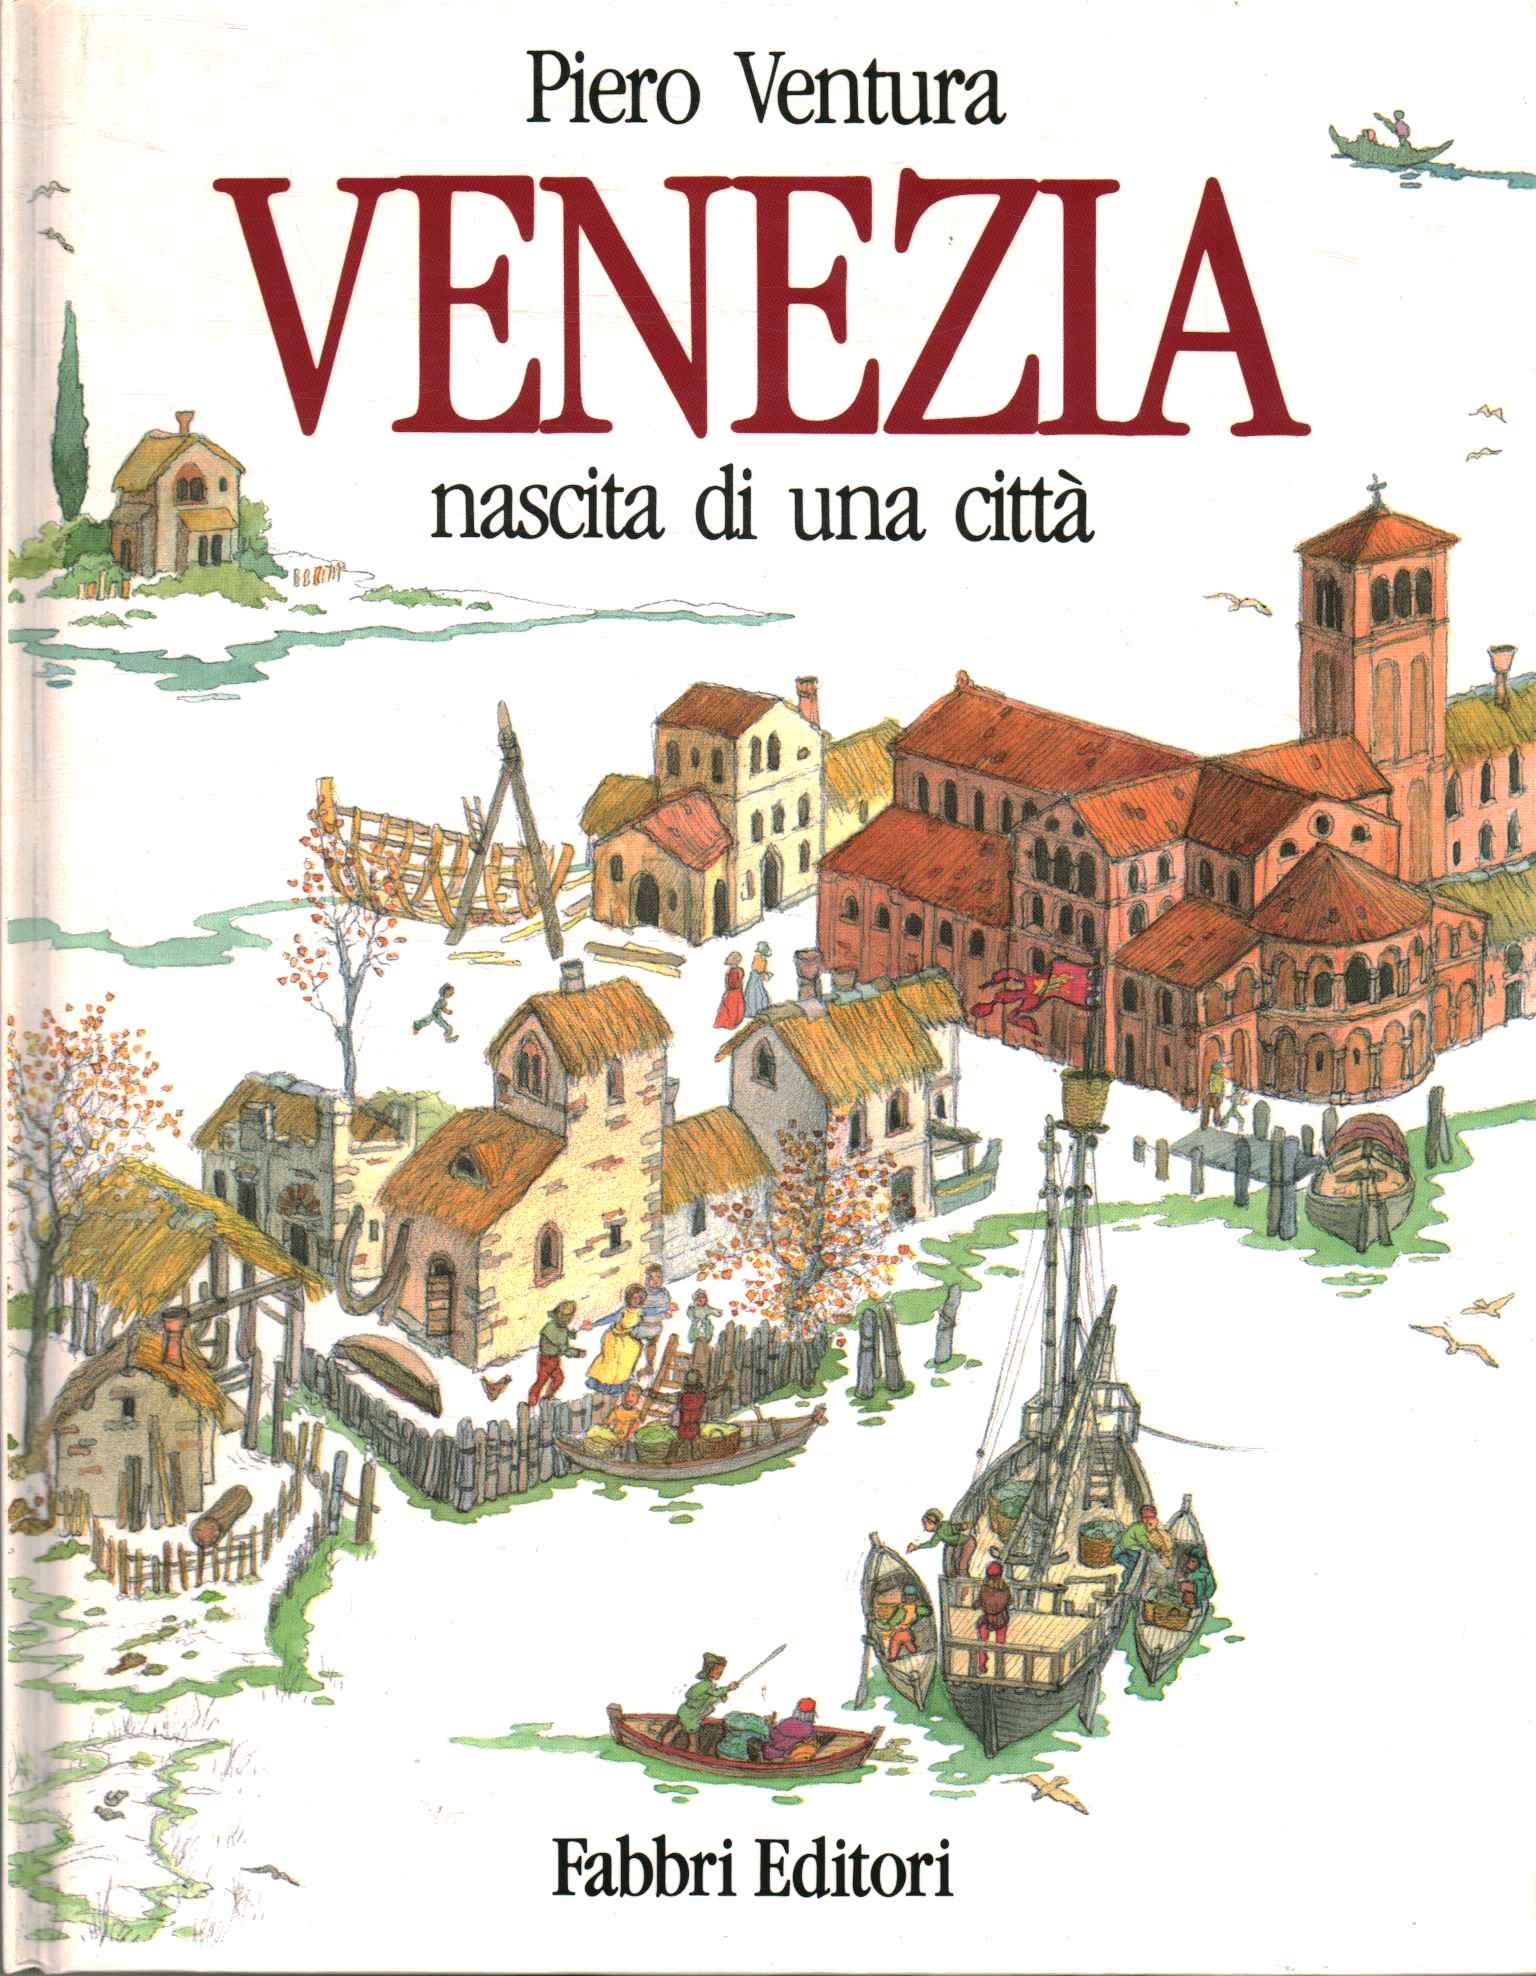 Venice. Birth of a city